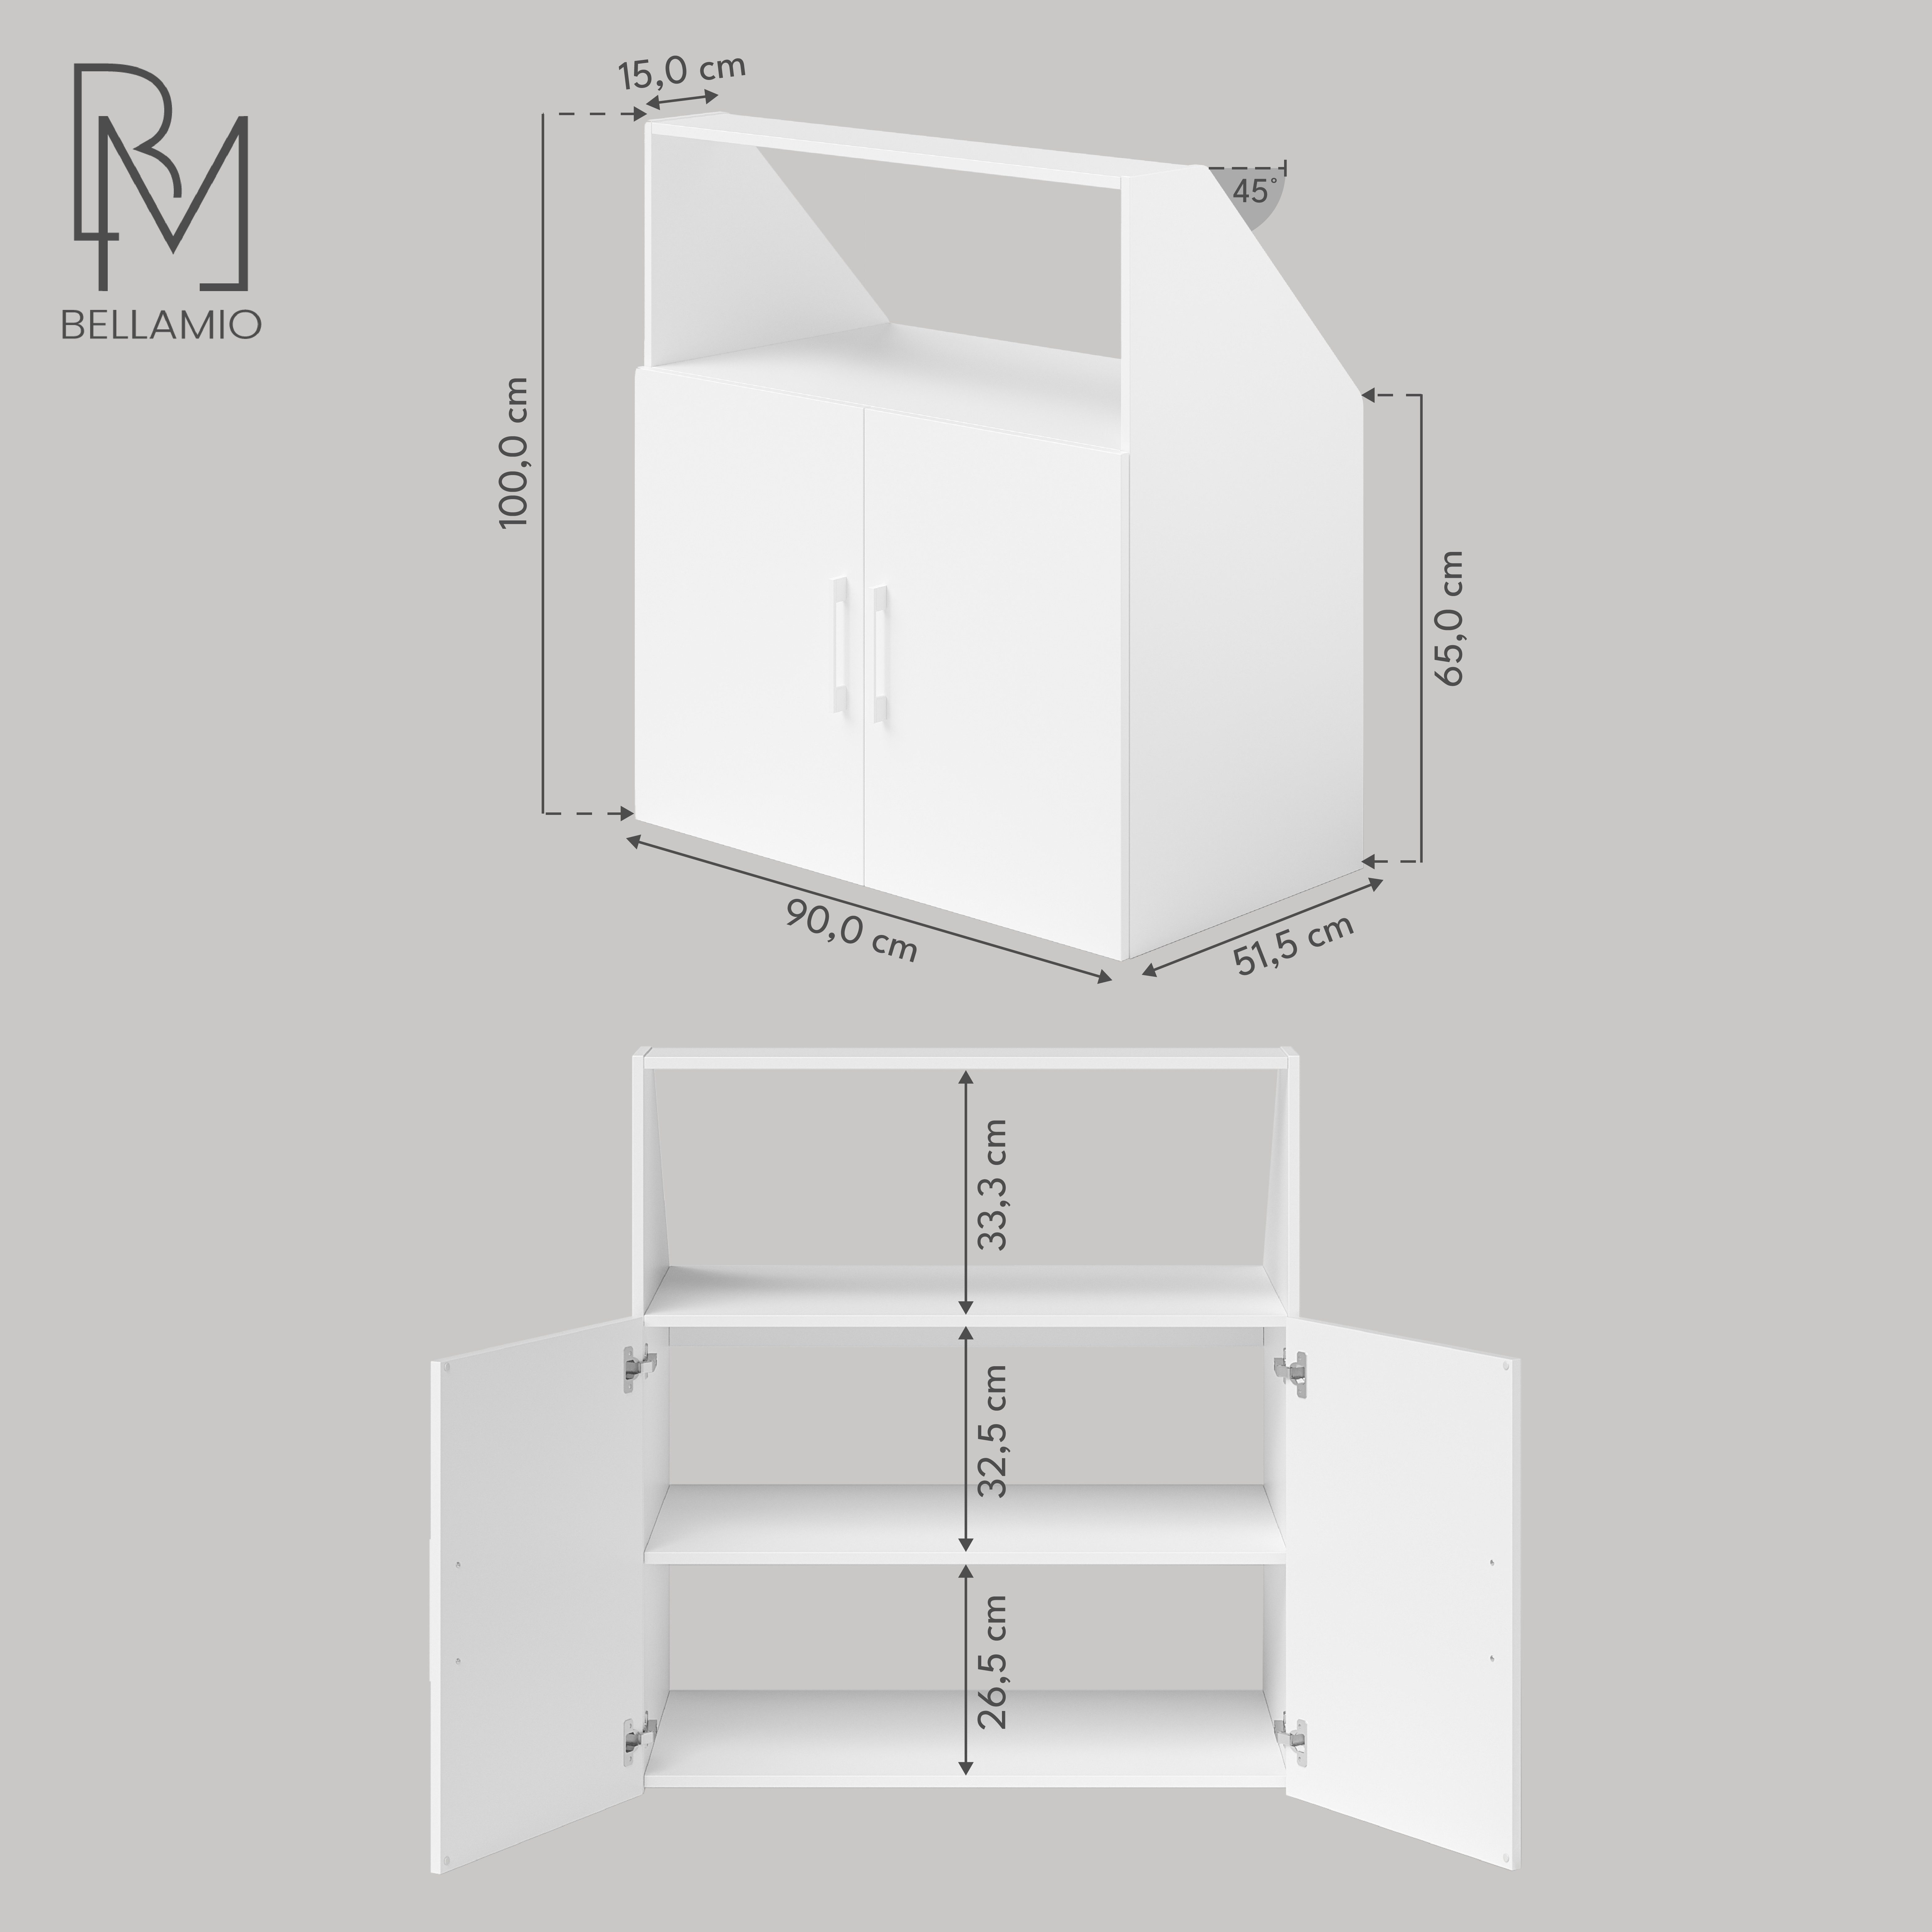 Bellamio Regal Aland Dachschrägenregal, 90 cm breit, mit 2 kurzen Türen, 45 Grad-Winkel für Dachschräge